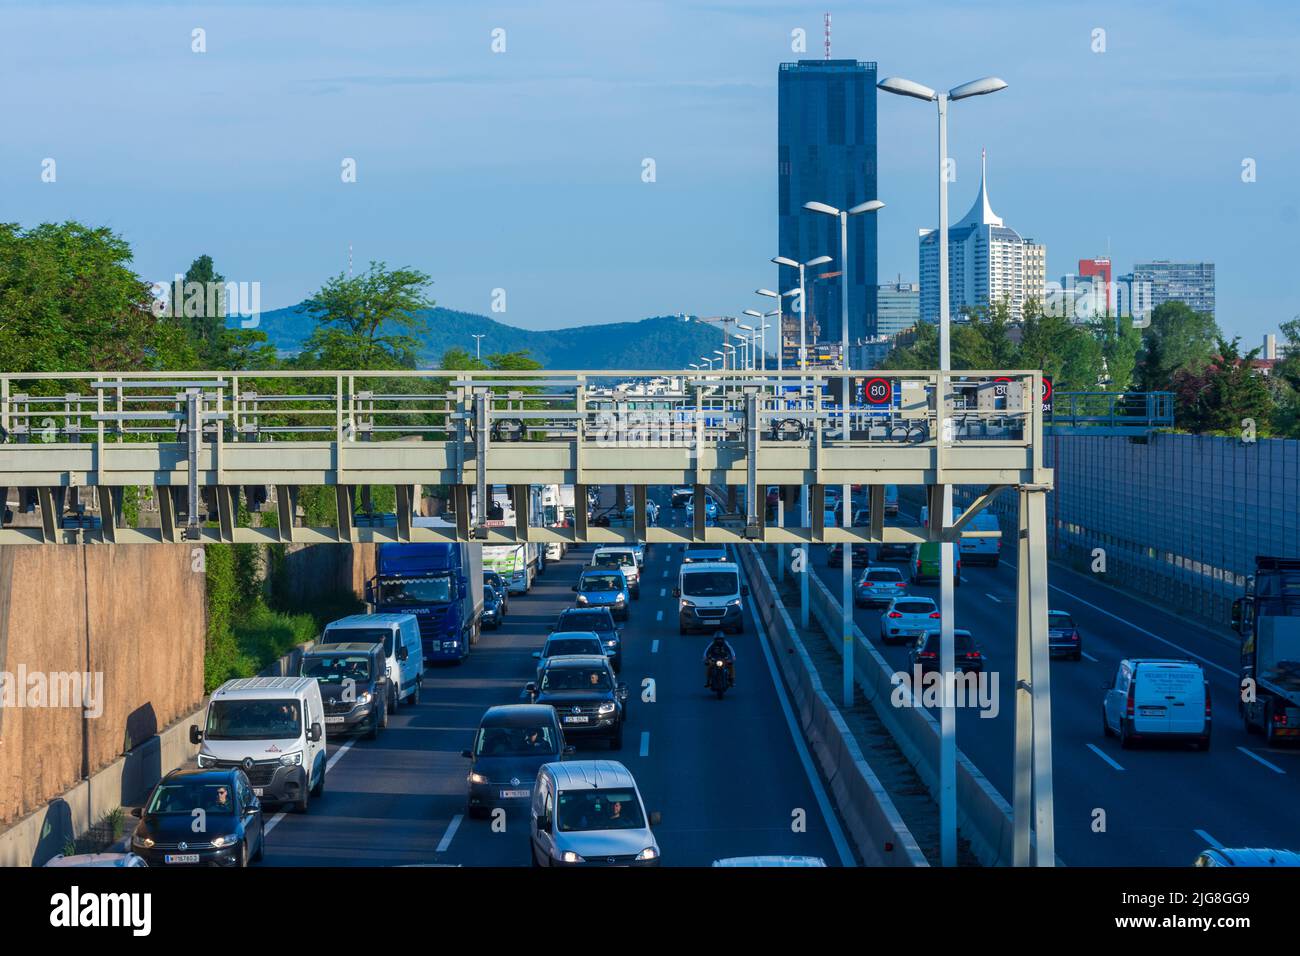 Vienne, embouteillage sur l'autoroute A22 Donauuferautobahn, DC Tour 1 en 22. Quartier Donaustadt, Wien, Autriche Banque D'Images